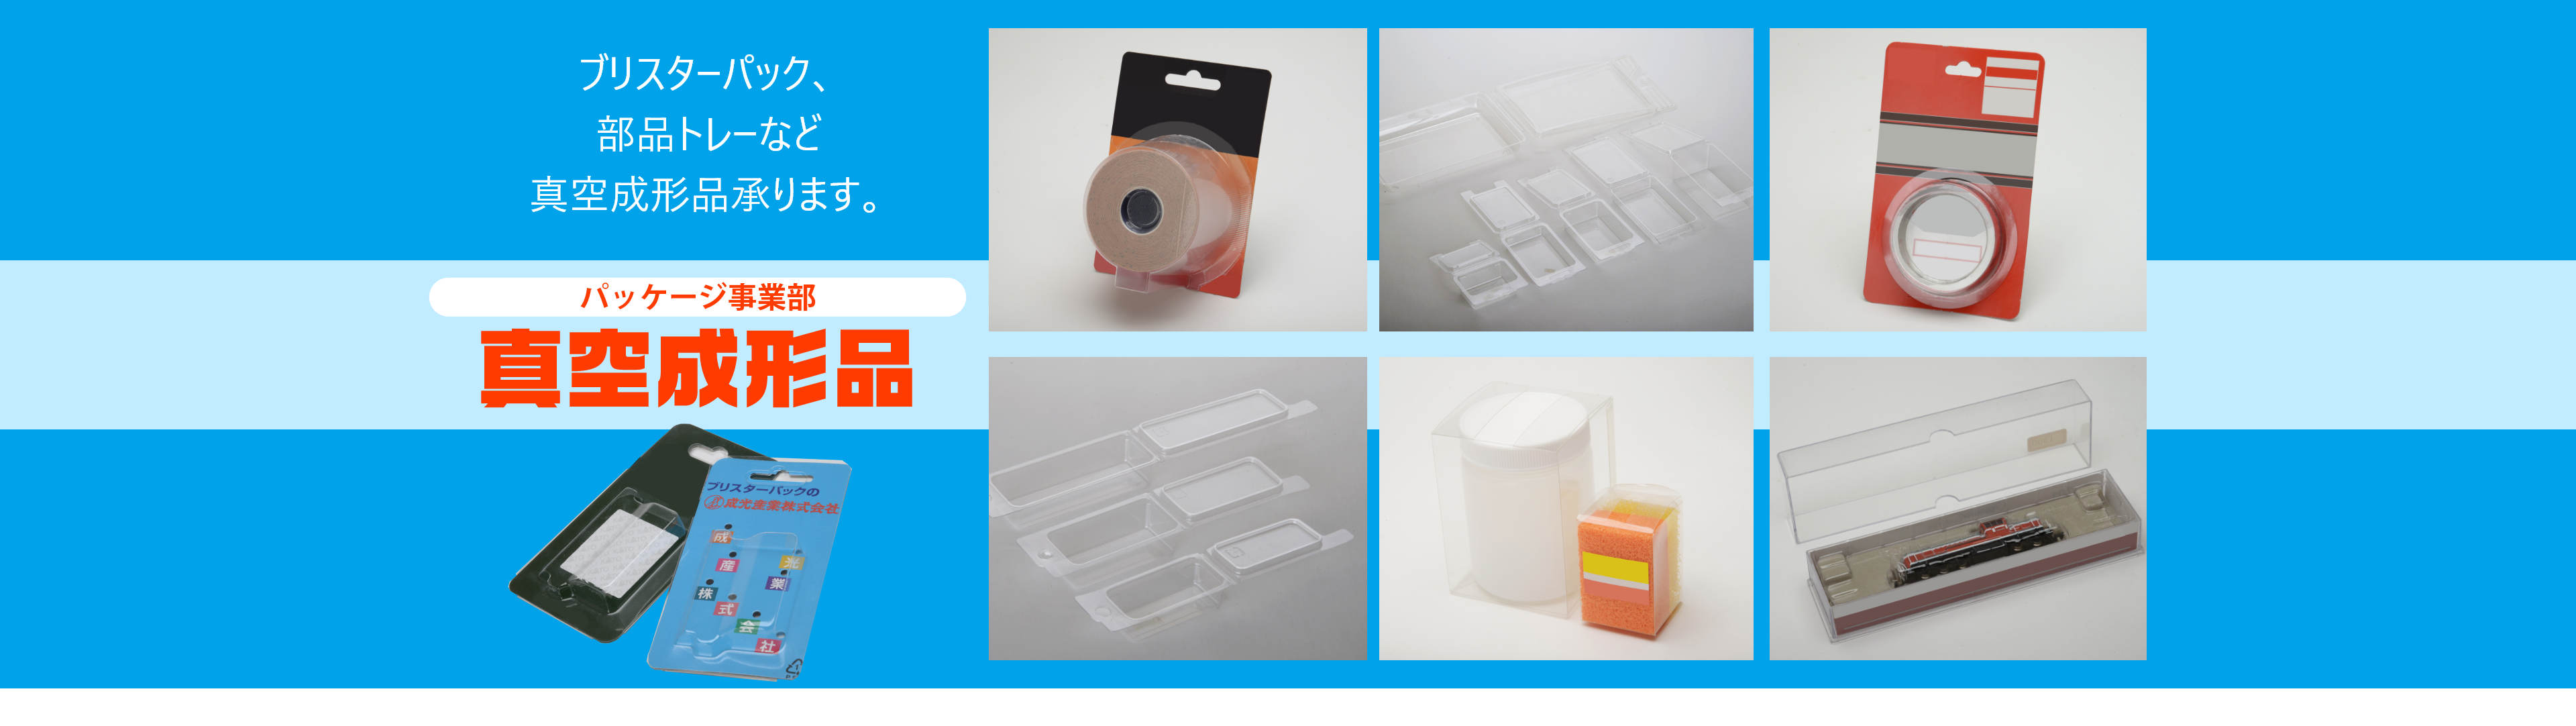 パッケージ事業部 真空成形品 ブリスターパック、部品トレーなど真空成形品承ります。